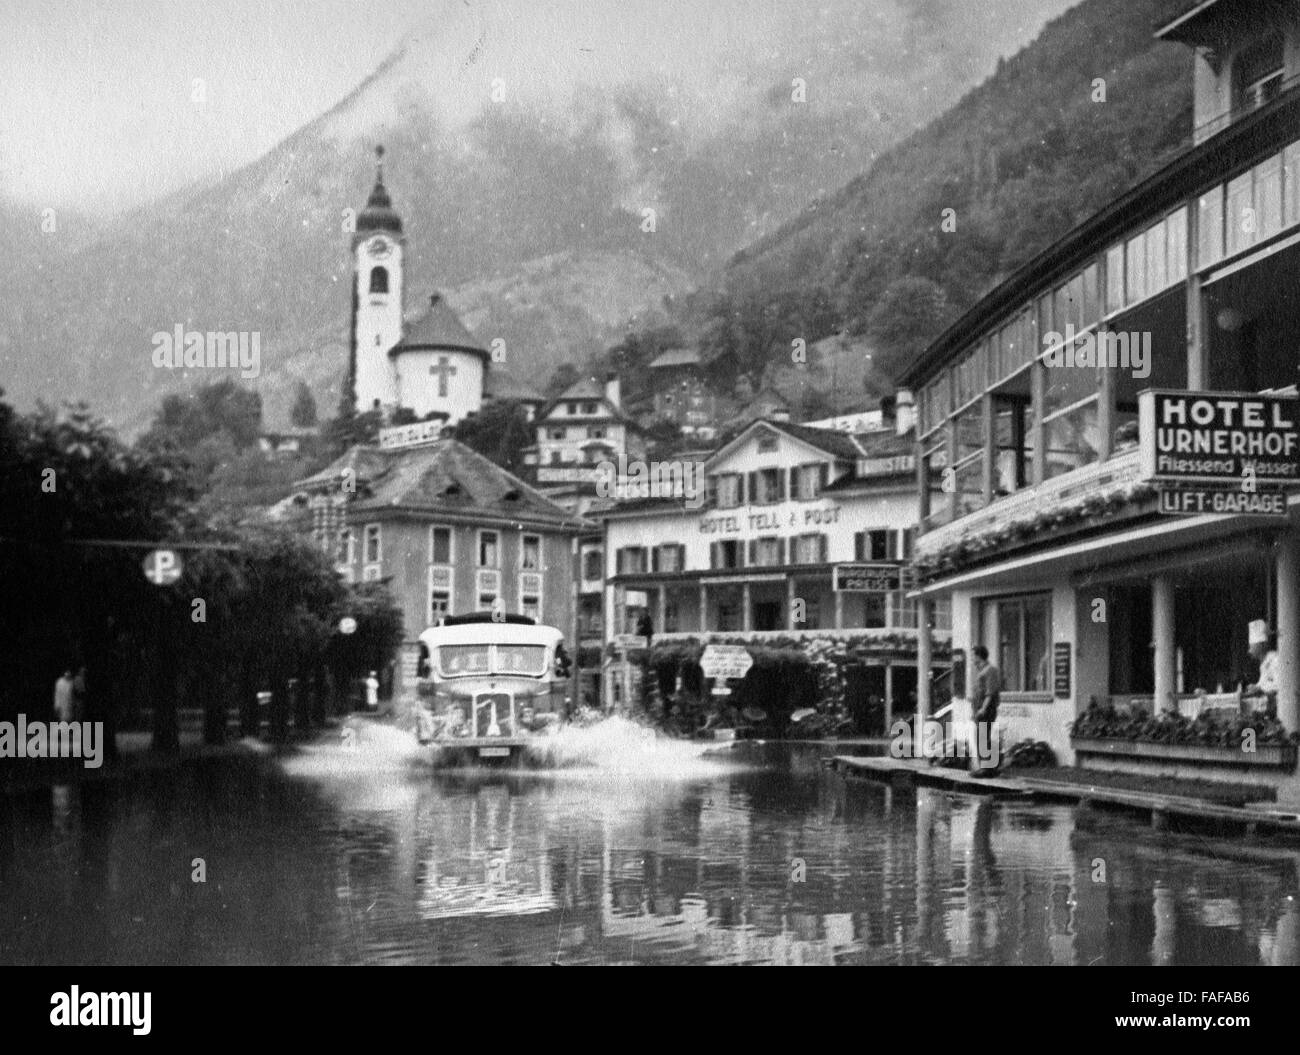 Hochwasser in Flüelen im Kanton Uri in der Schweiz, 1930er Jahre. Flood at Fluelen at Uri canton Switzerland, 1930s. Stock Photo